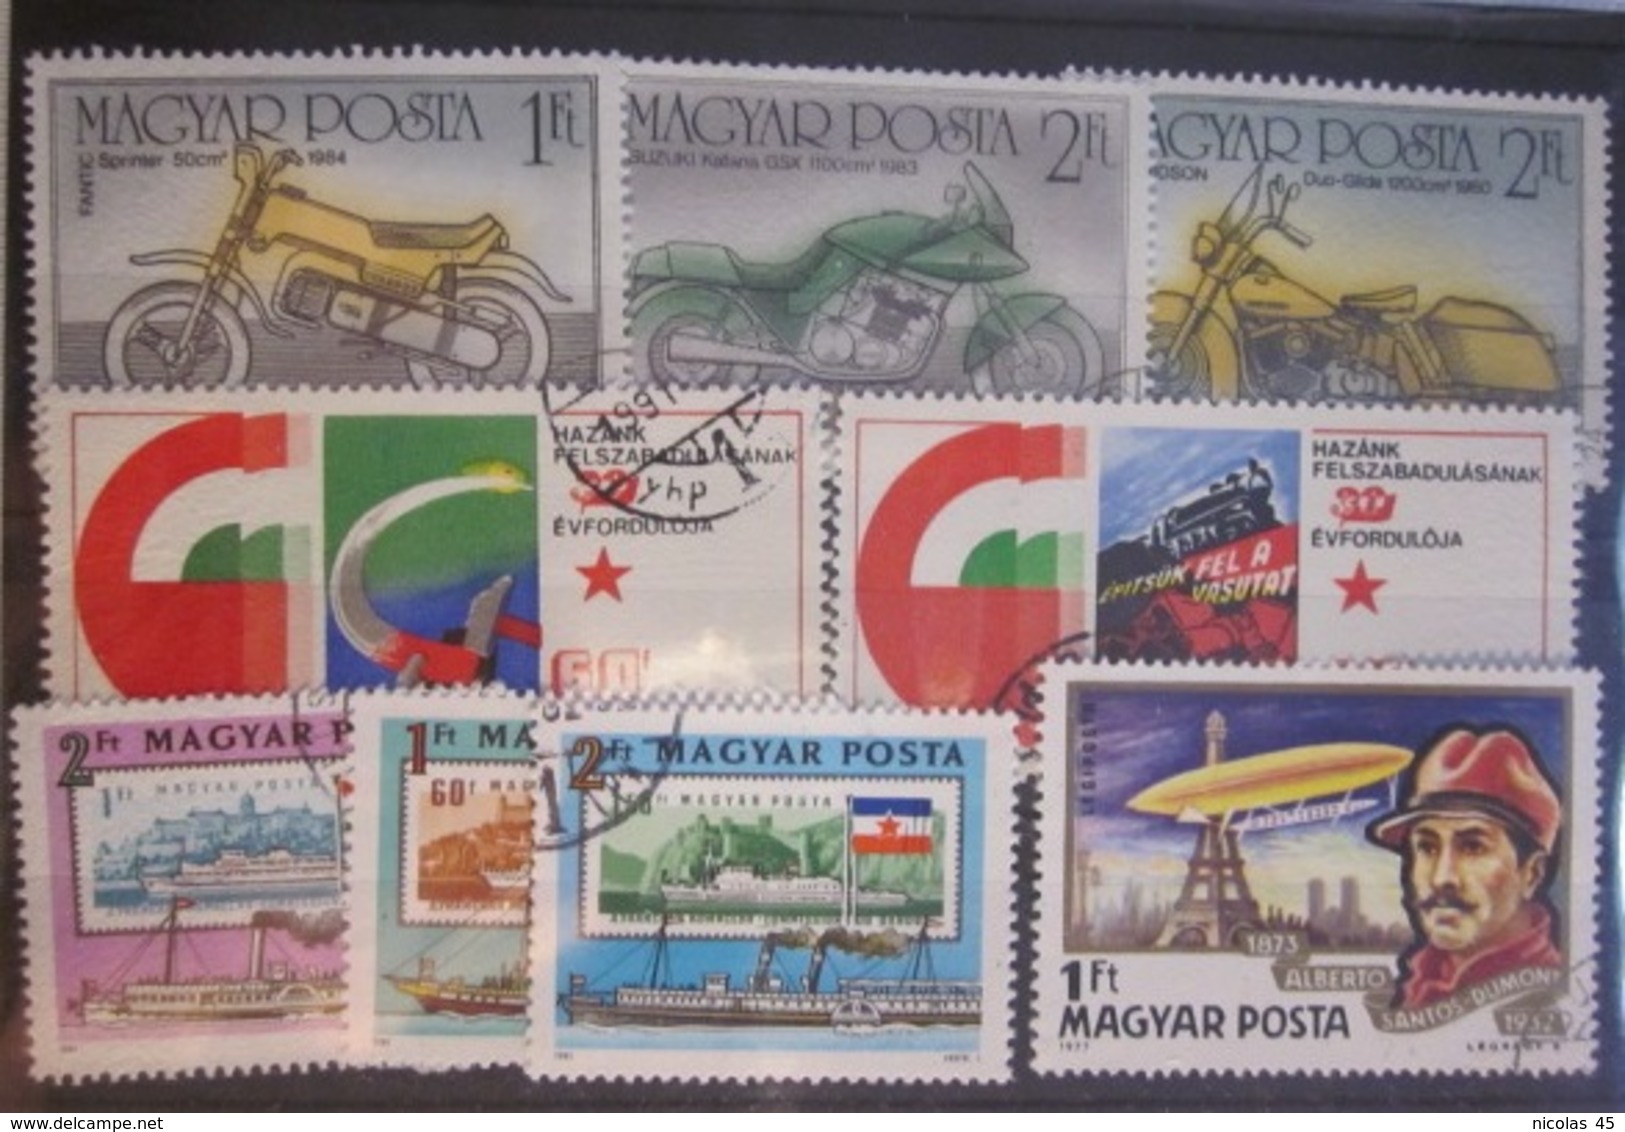 Gros lot timbres monde - Thématiques - Voir photos